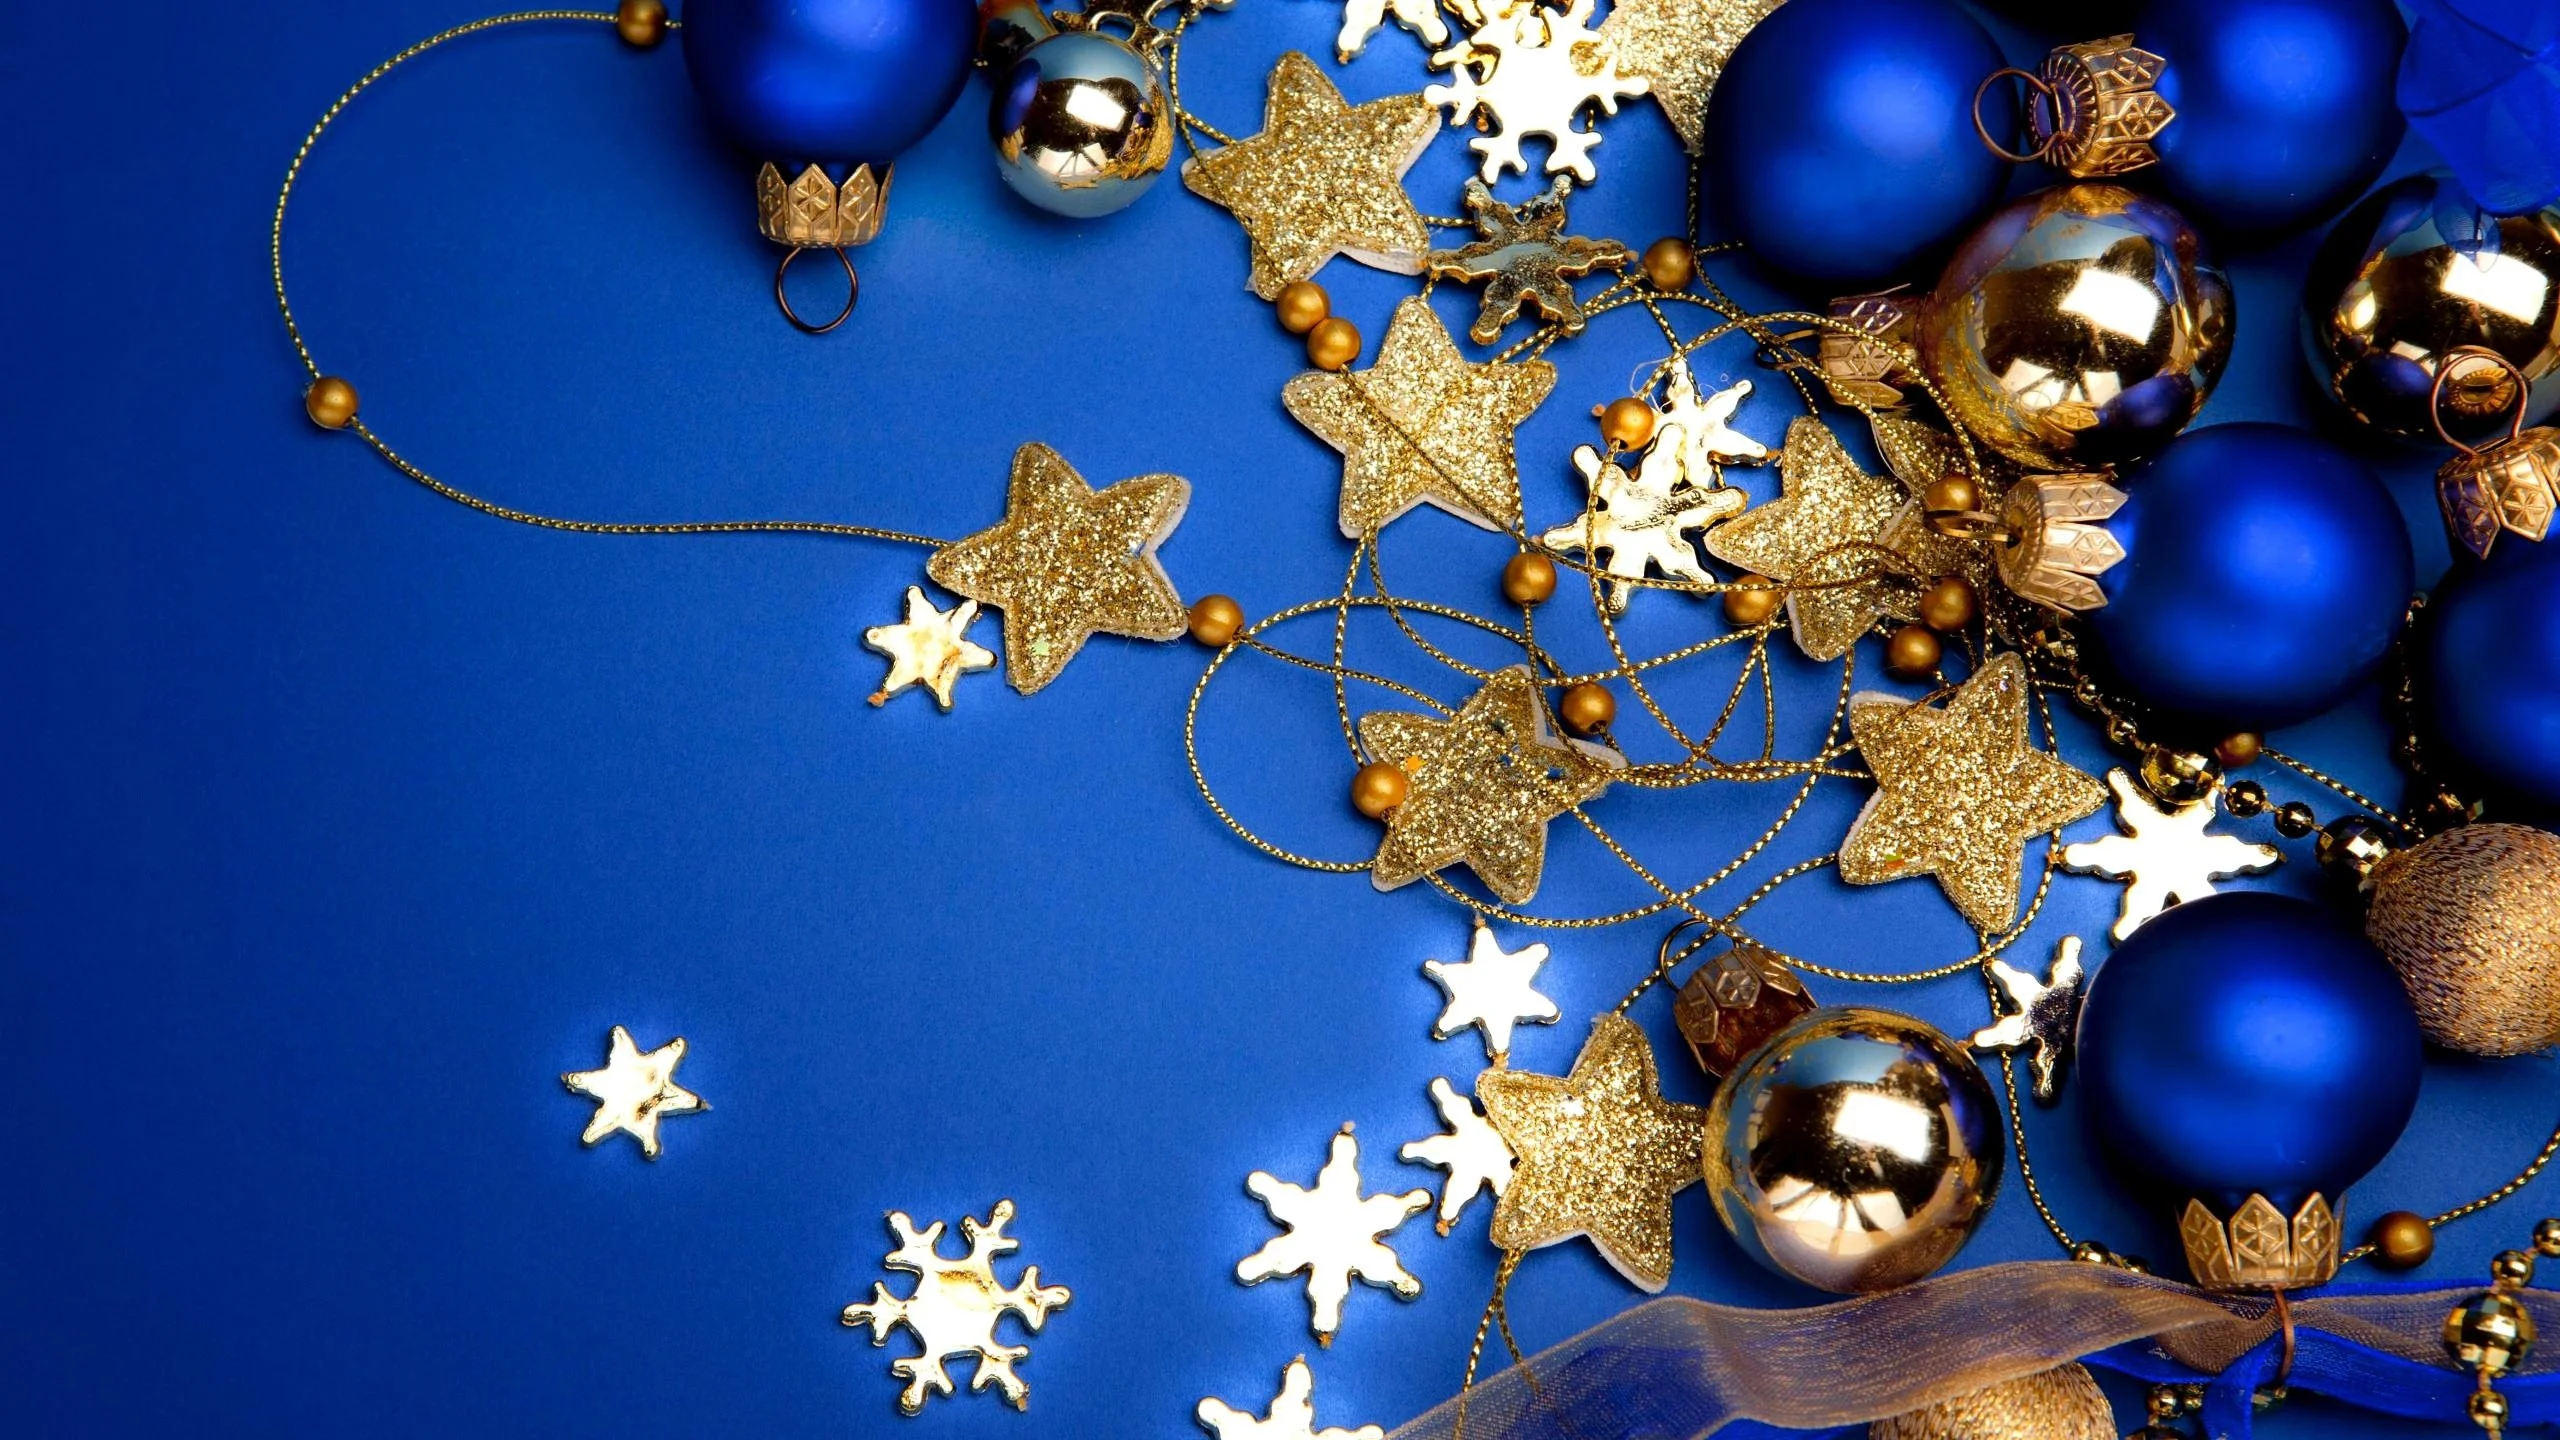 Blue Christmas Wallpaper for Desktop.